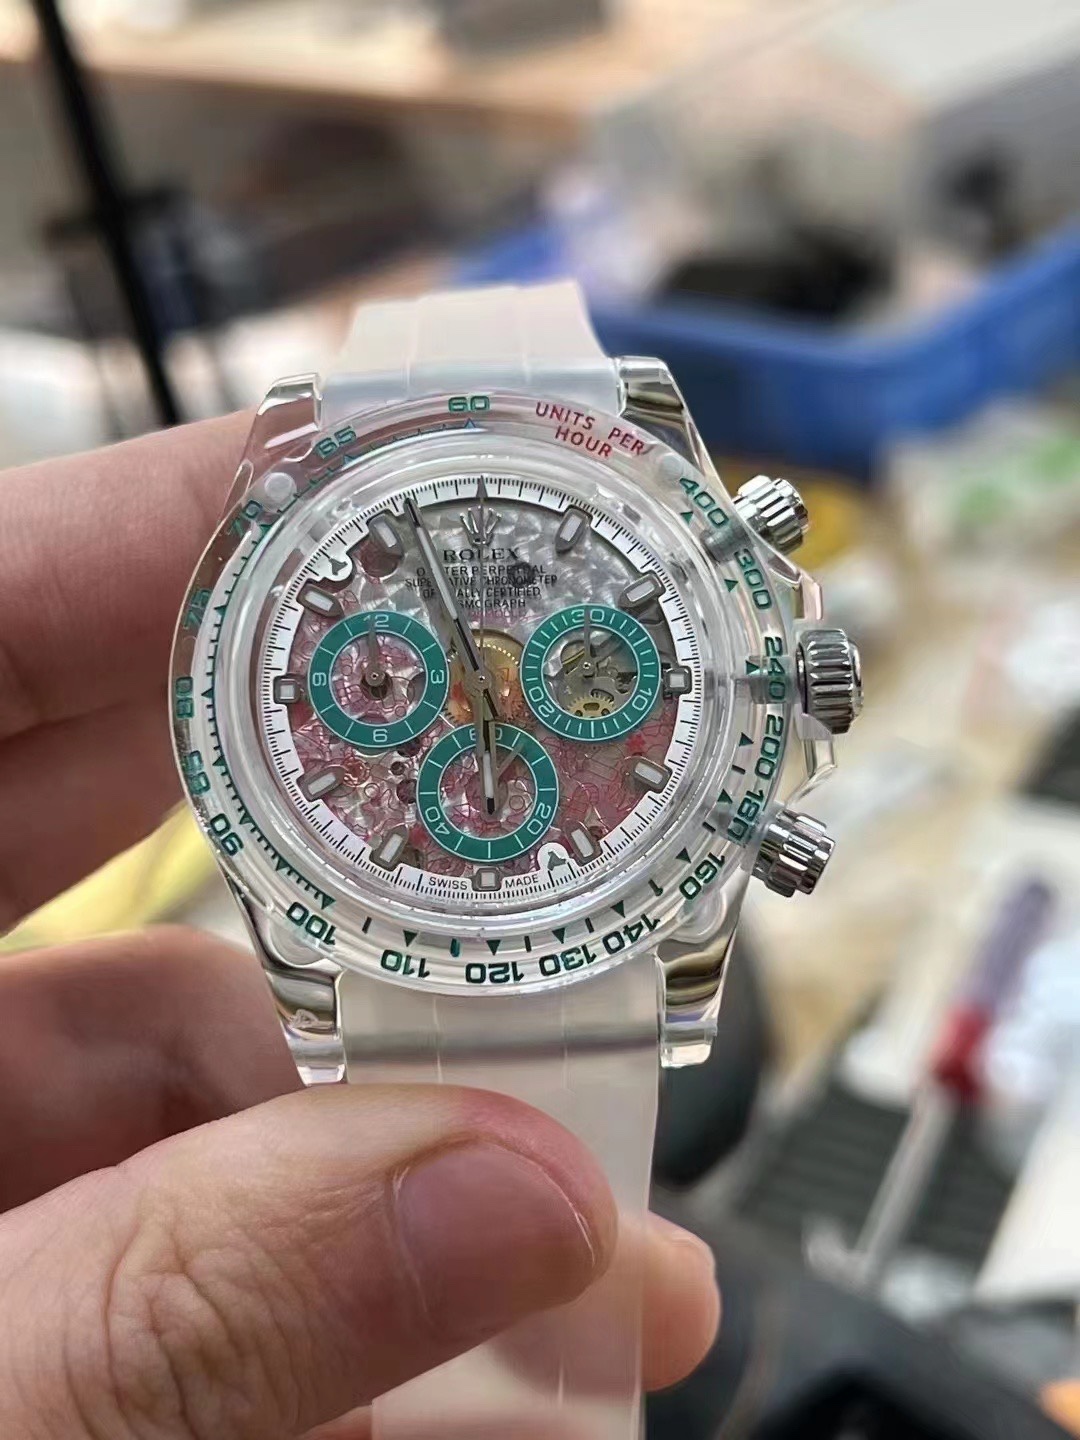 改裝迪通拿手錶,AET 4130機芯的藍寶石水晶殼迪通拿仿錶